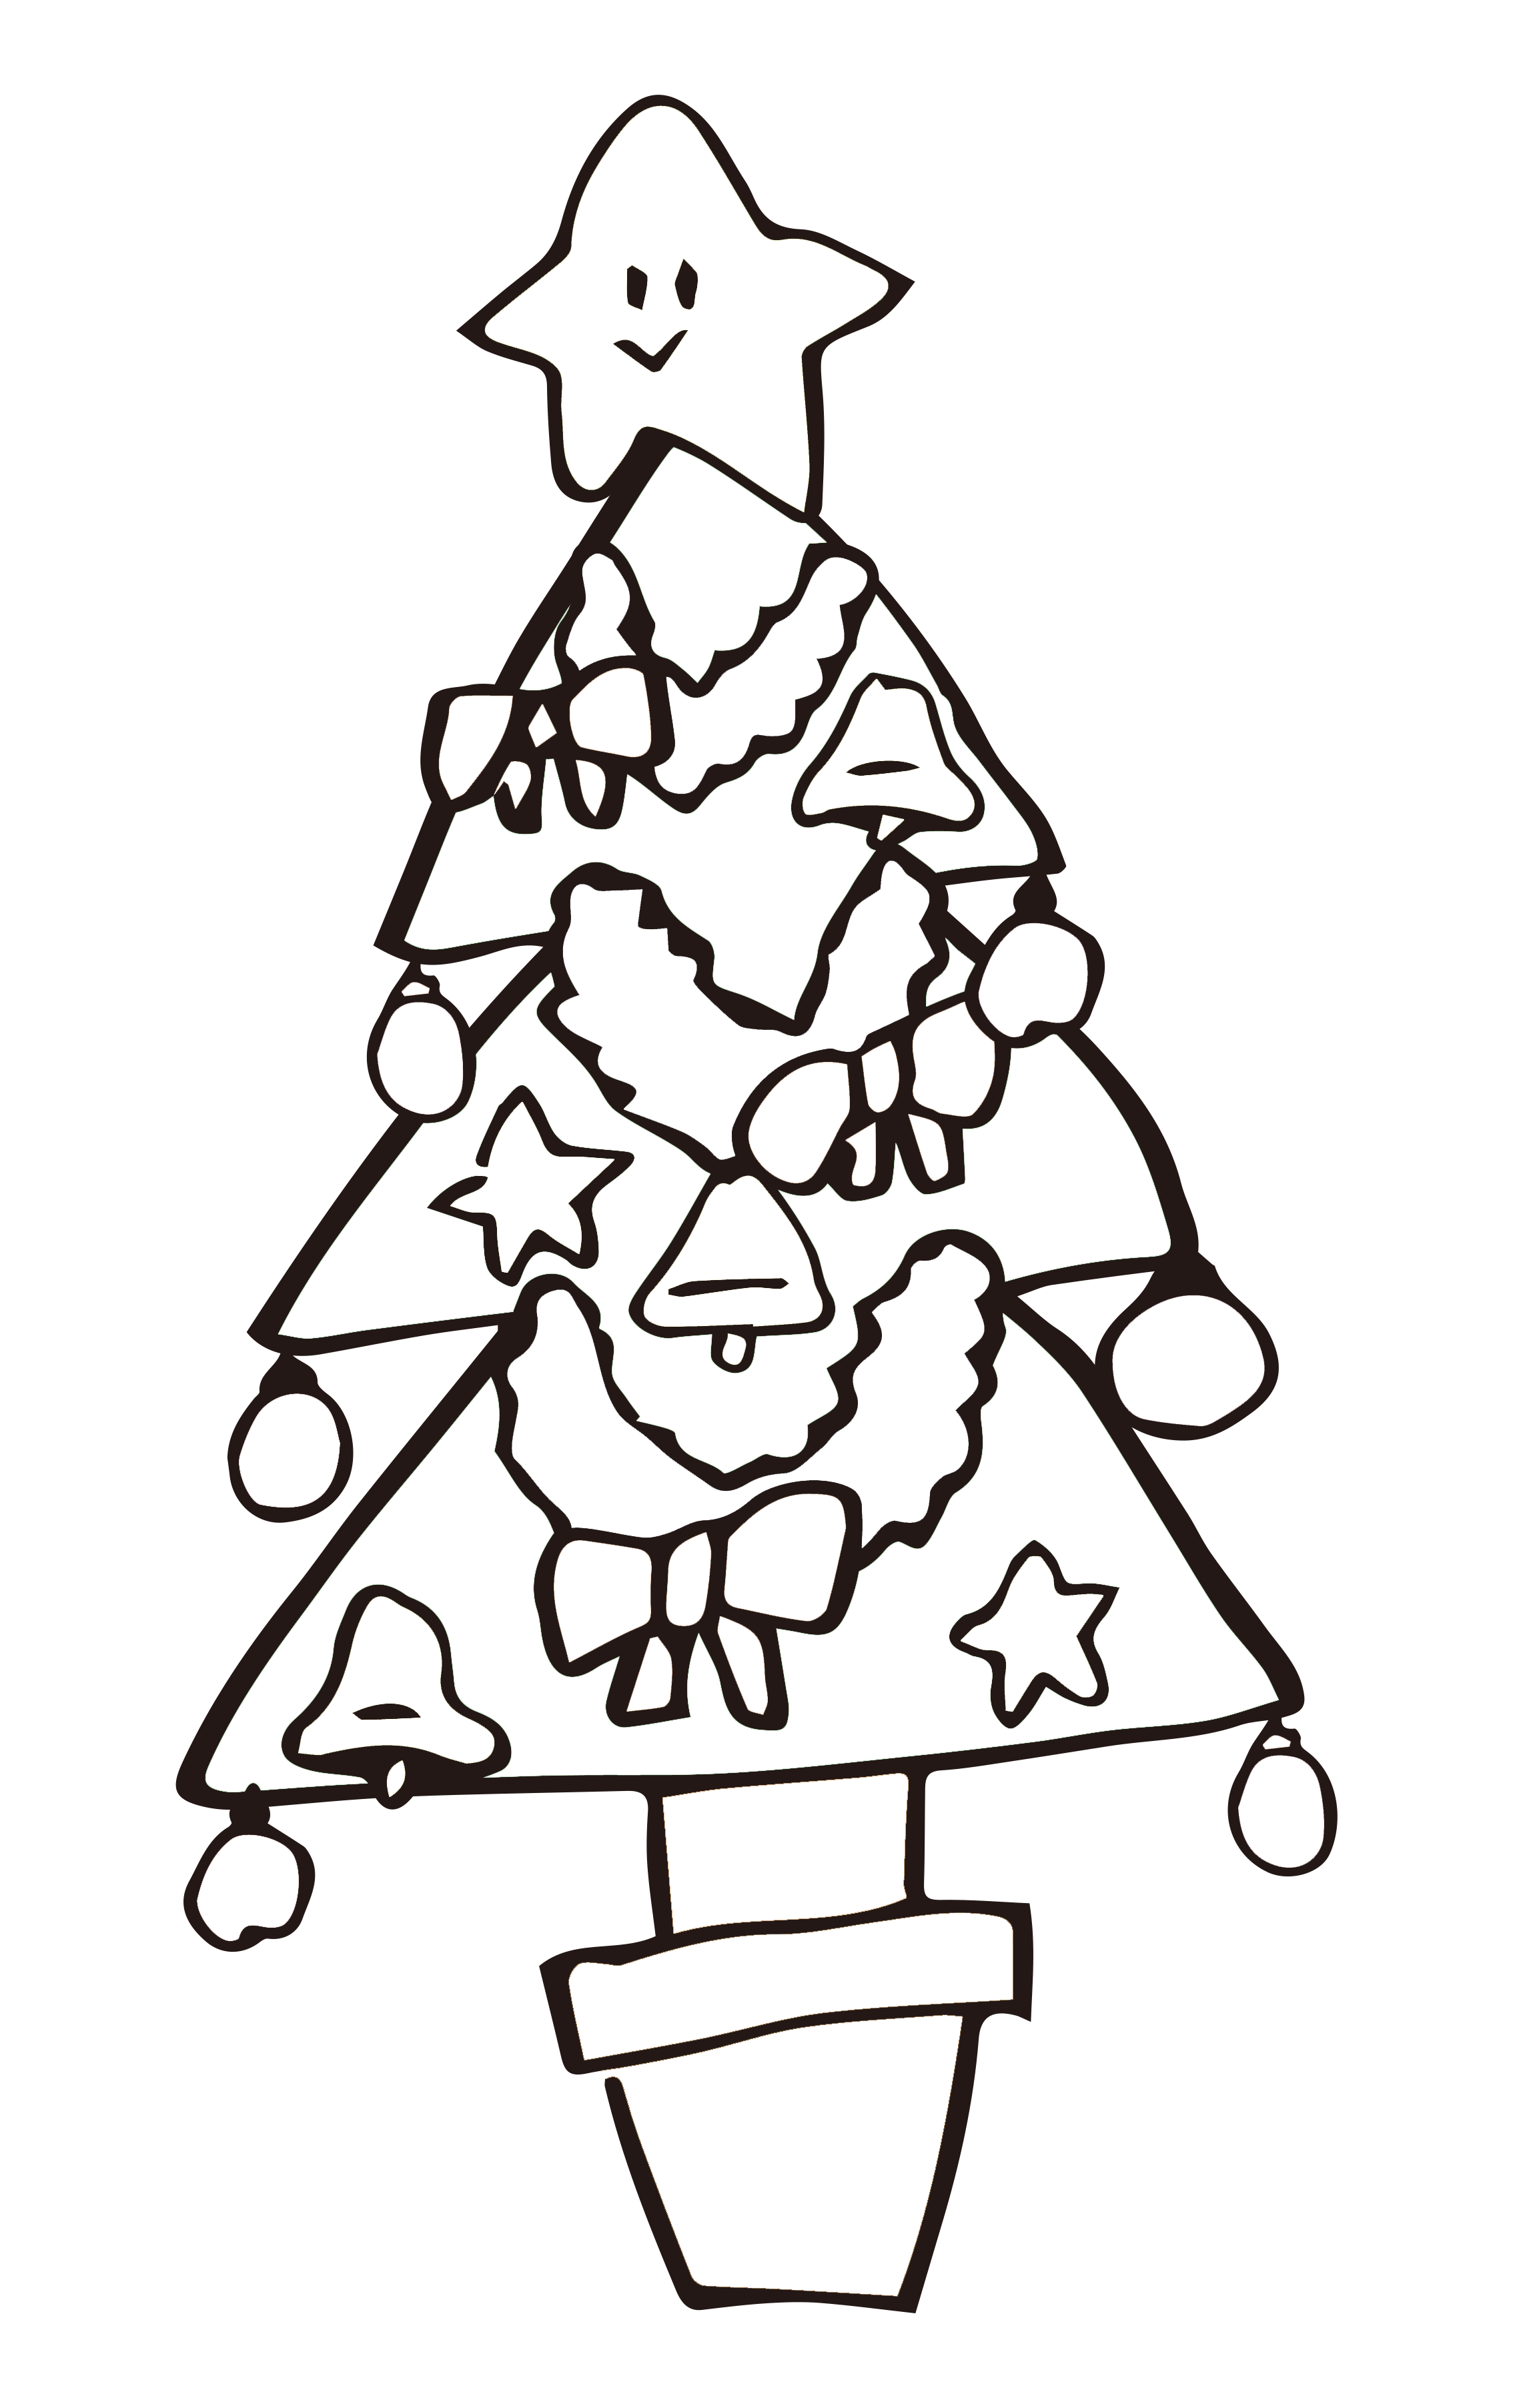 クリスマスツリーのイラスト ゆるくてかわいい無料イラスト アイコン素材屋 ぴよたそ